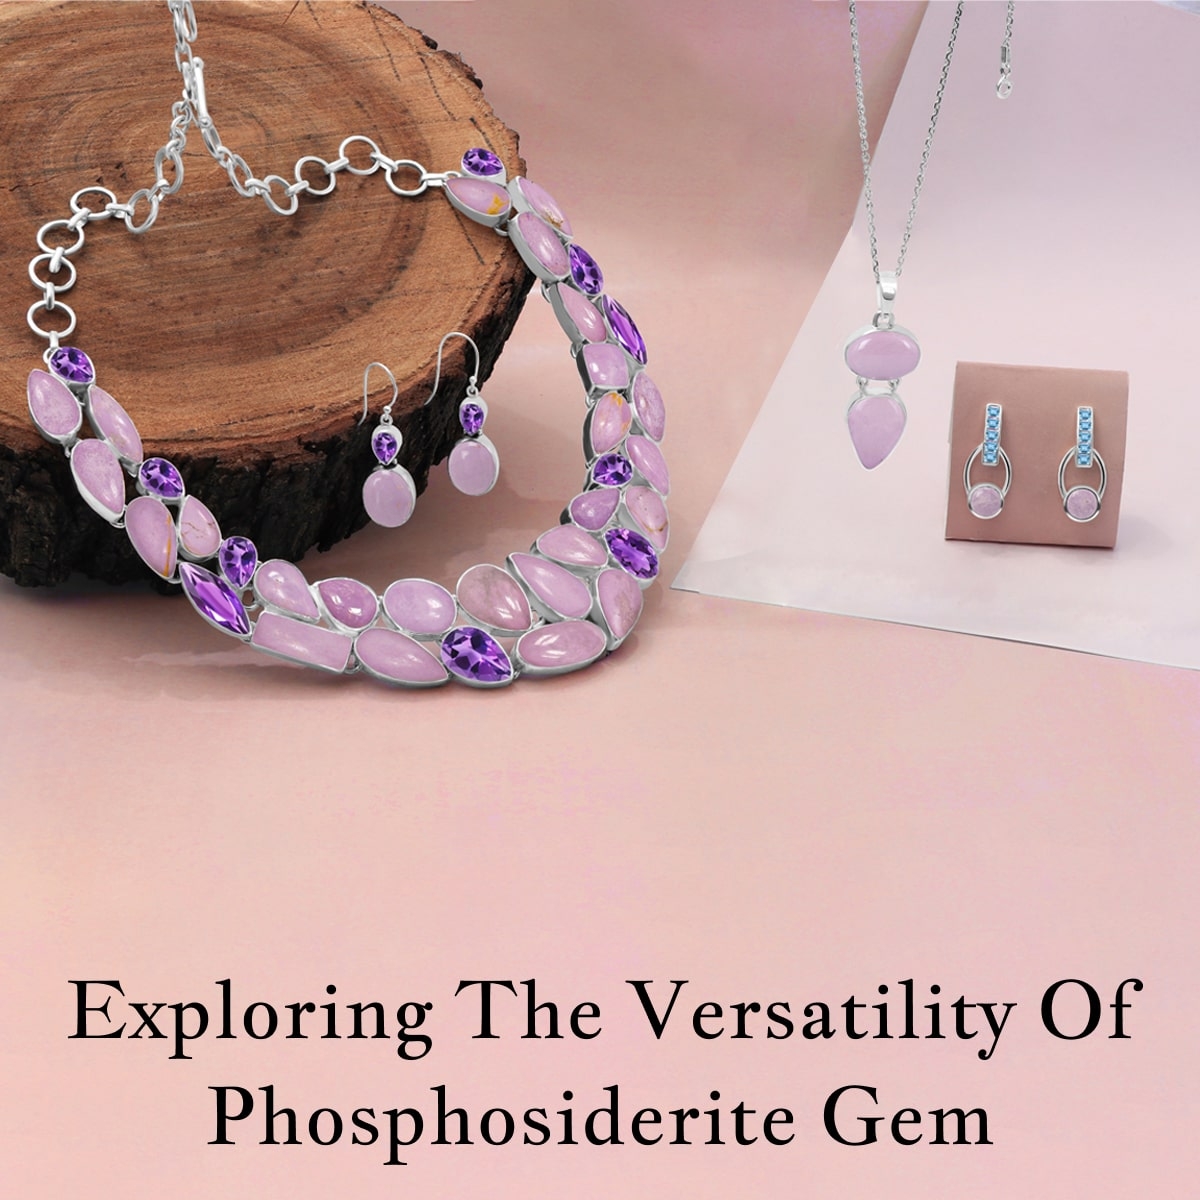 Uses of Phosphosiderite Gem